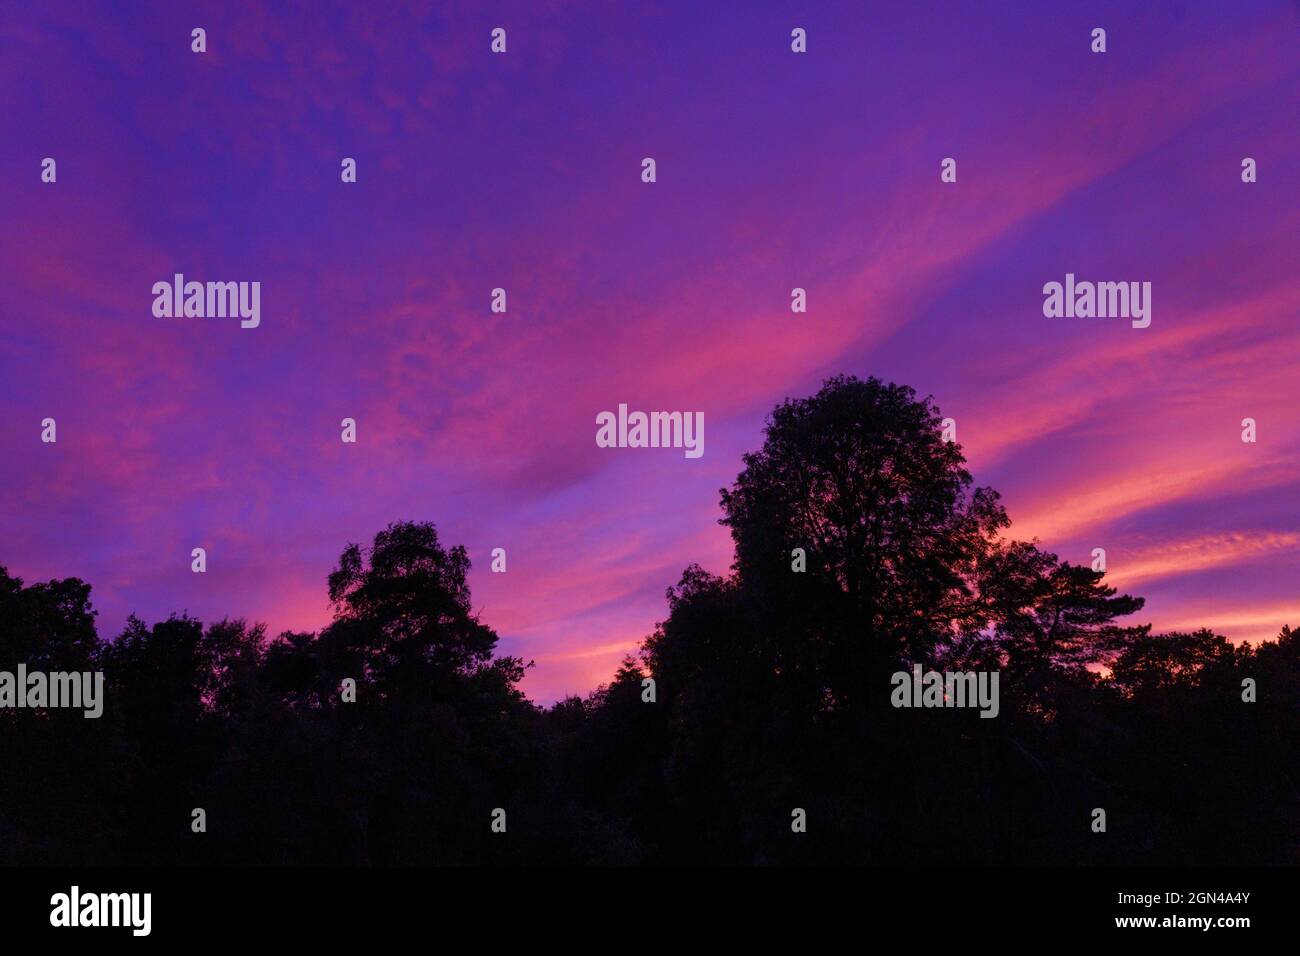 Spektakulärer Sonnenuntergang in Lila, Pink und Blau mit einer markanten Baumsilhouette. Stockfoto